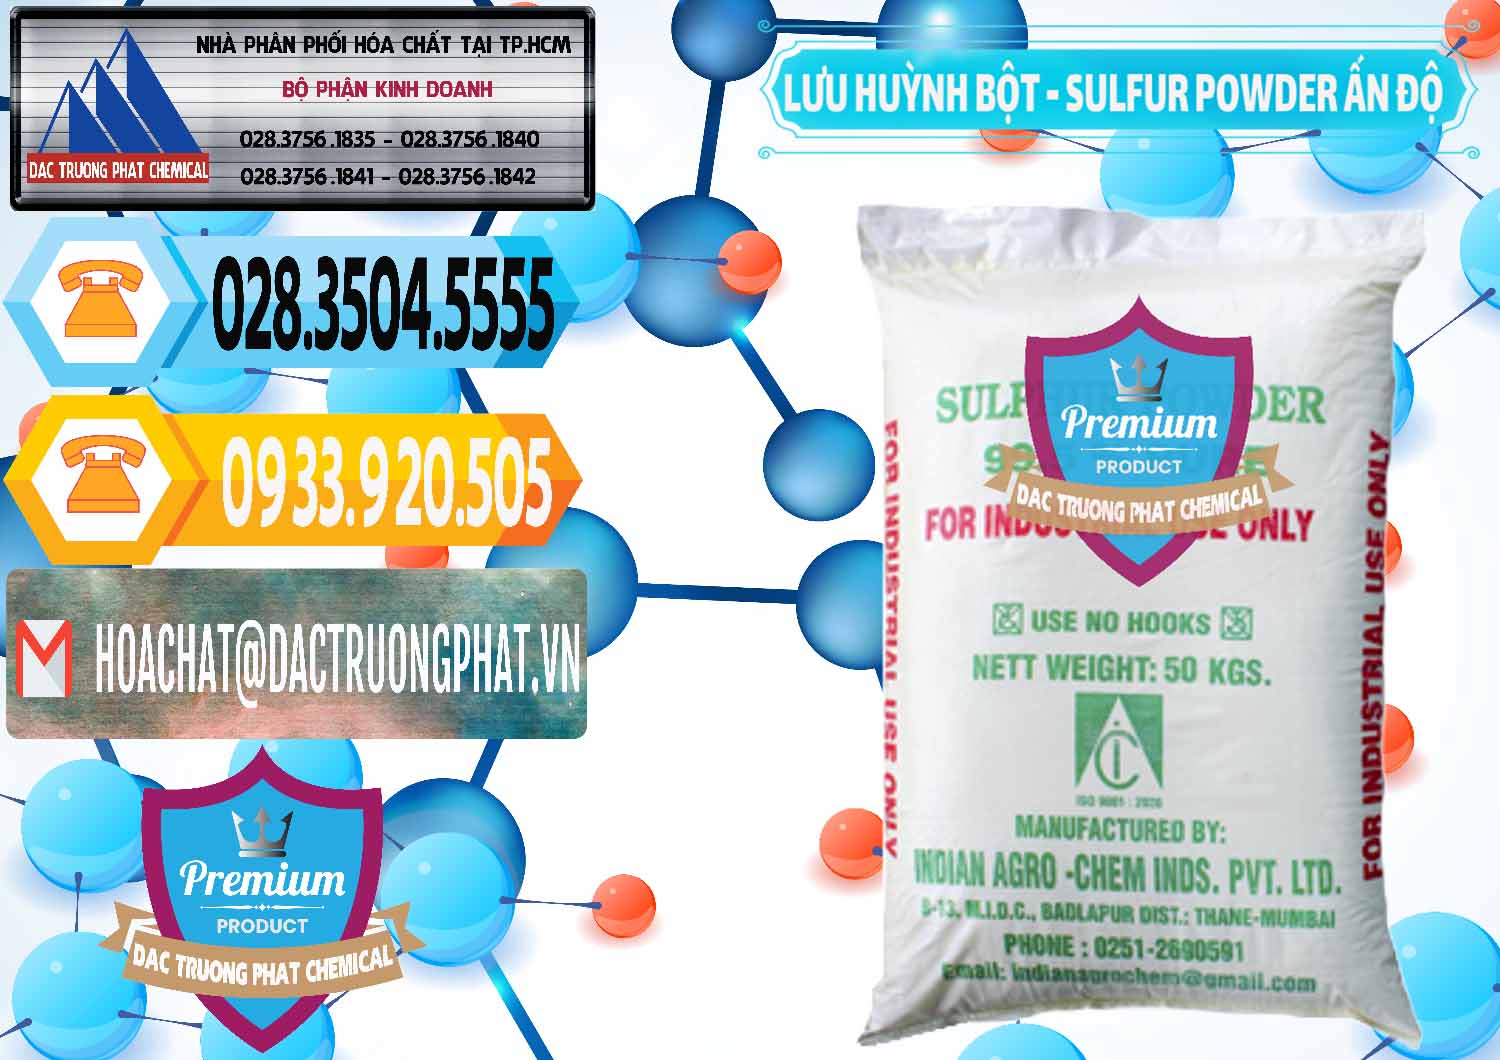 Nơi chuyên bán ( cung cấp ) Lưu huỳnh Bột - Sulfur Powder Ấn Độ India - 0347 - Chuyên cung cấp & phân phối hóa chất tại TP.HCM - hoachattayrua.net